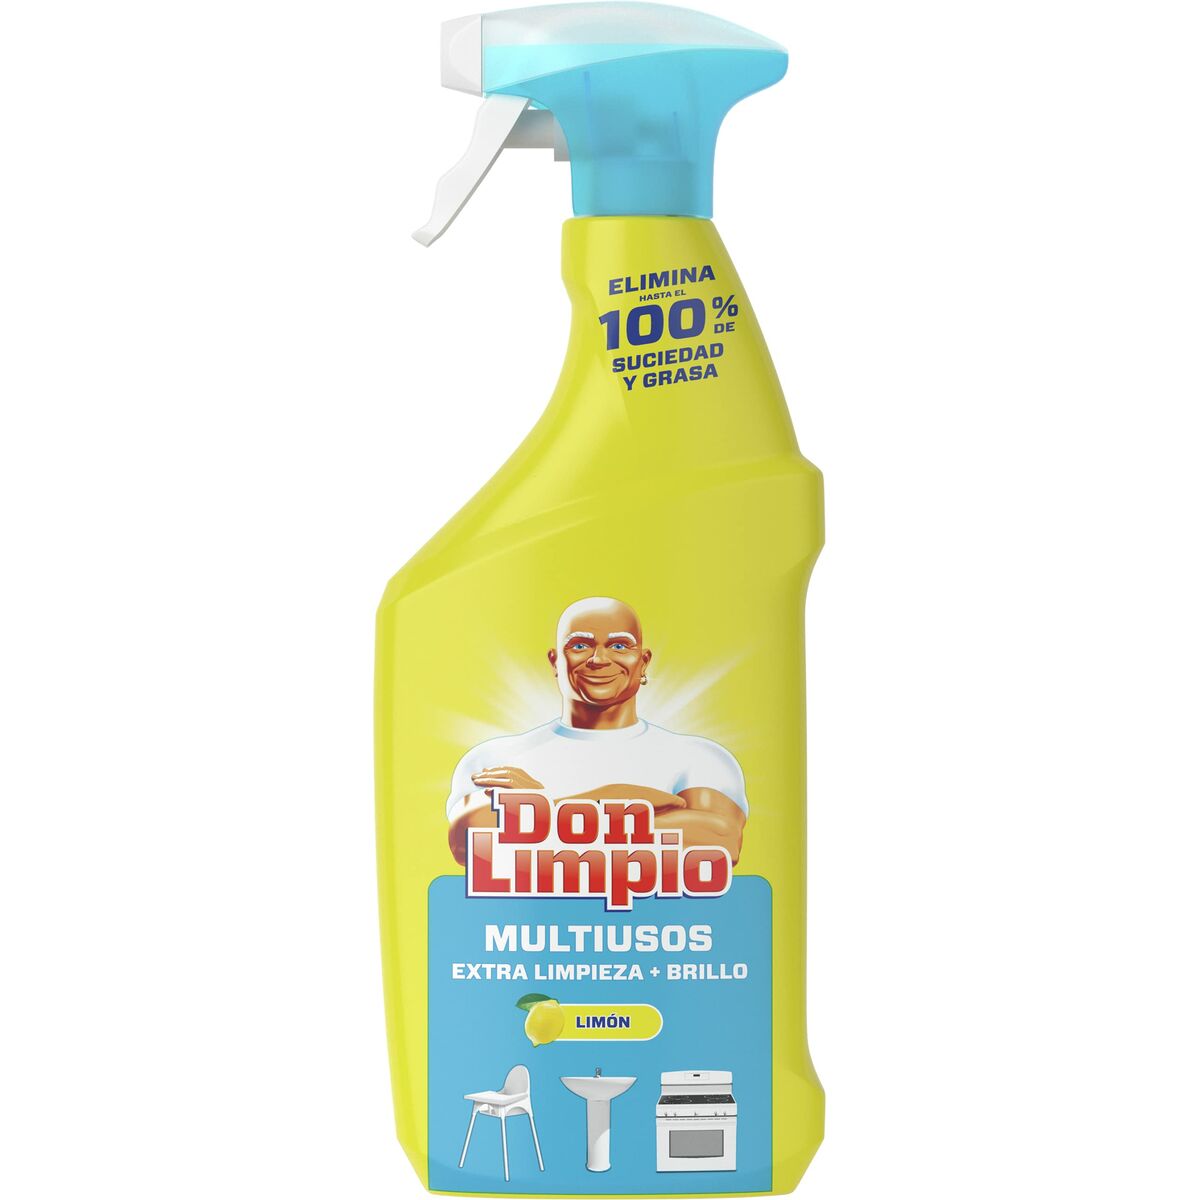 Don Limpio Limpieza Profunda Spray